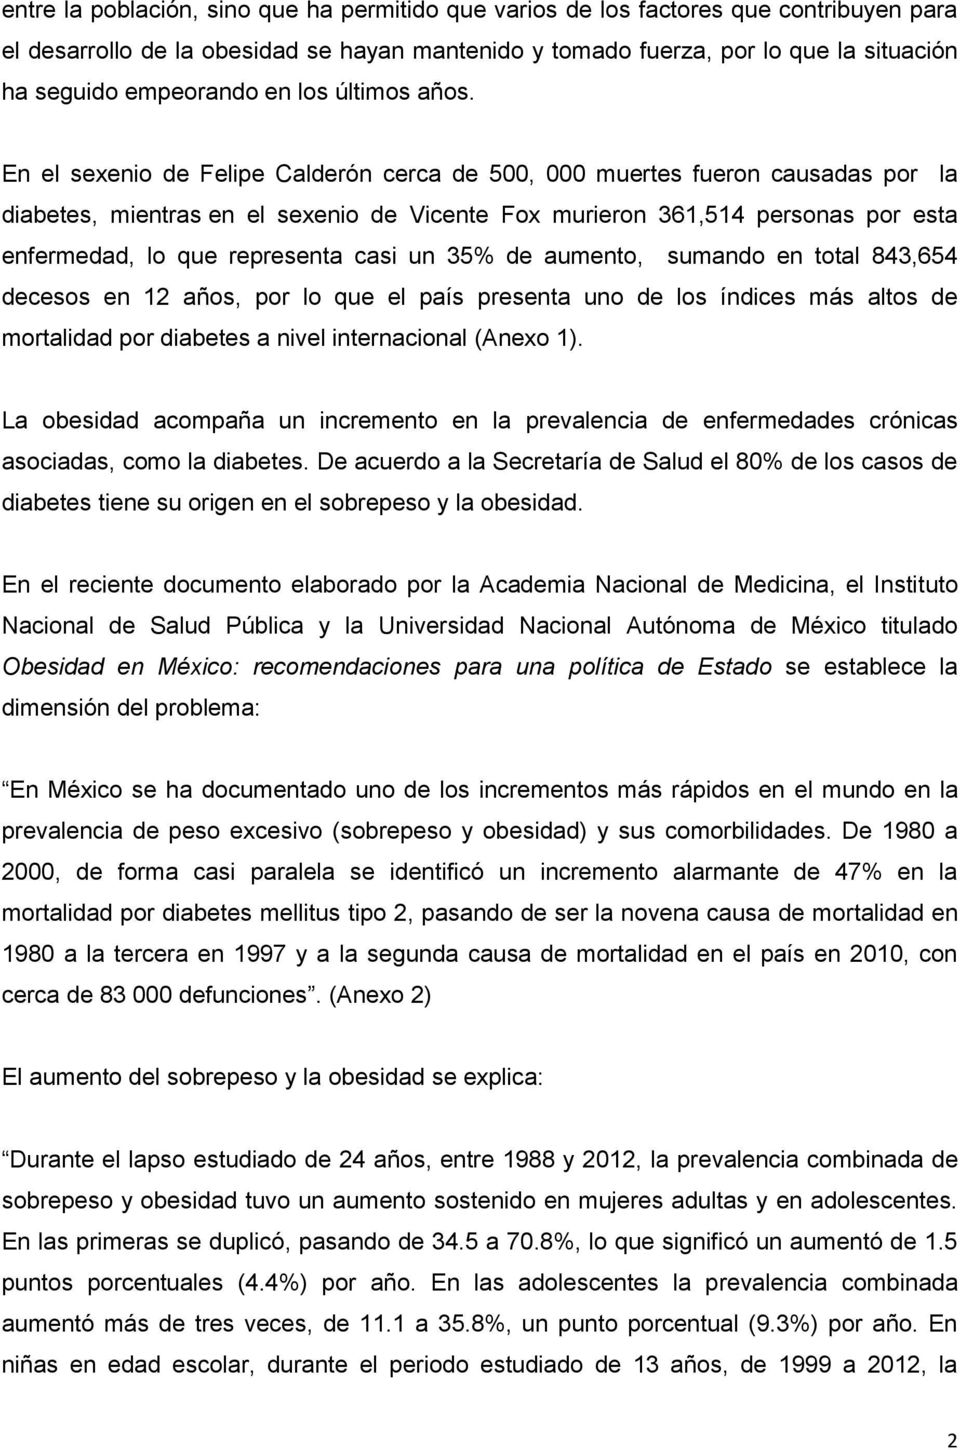 En el sexenio de Felipe Calderón cerca de 500, 000 muertes fueron causadas por la diabetes, mientras en el sexenio de Vicente Fox murieron 361,514 personas por esta enfermedad, lo que representa casi